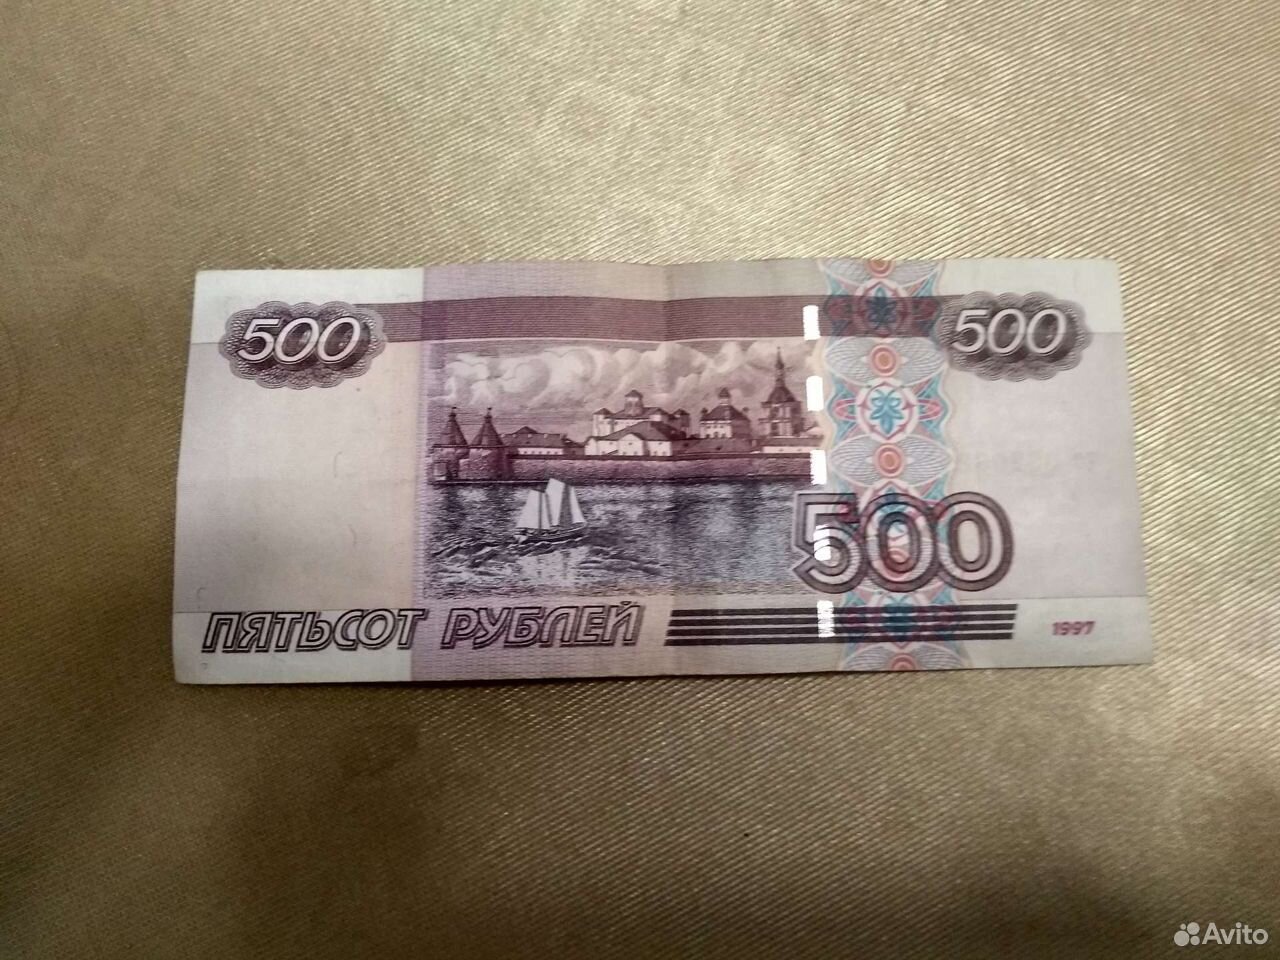 26 500 рублей. Купюра 500 рублей. 500 Рублей. Купюра 500 рублей 1997 года. Купюра 500 рублей 1997.